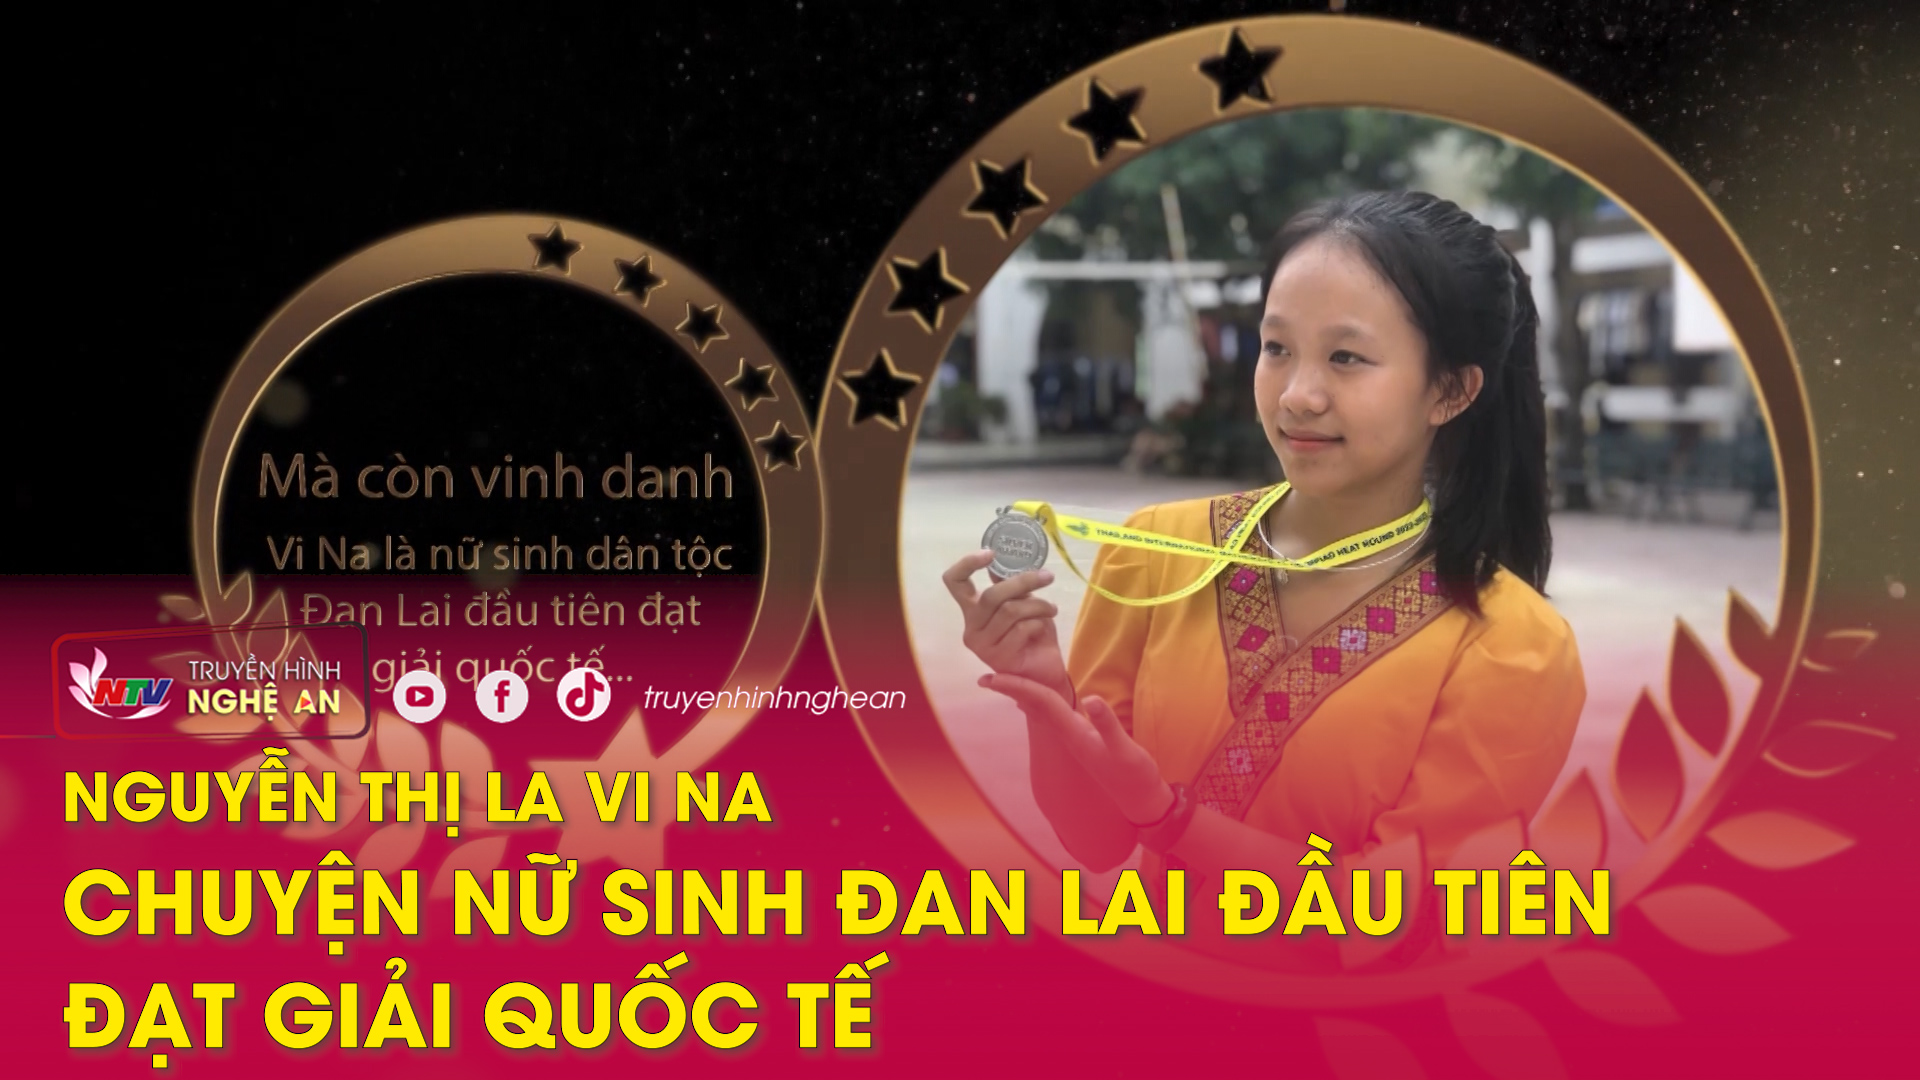 Trò chuyện cuối tuần: Nguyễn La Vi Na nữ sinh Đan Lai đầu tiên đạt giải quốc tế